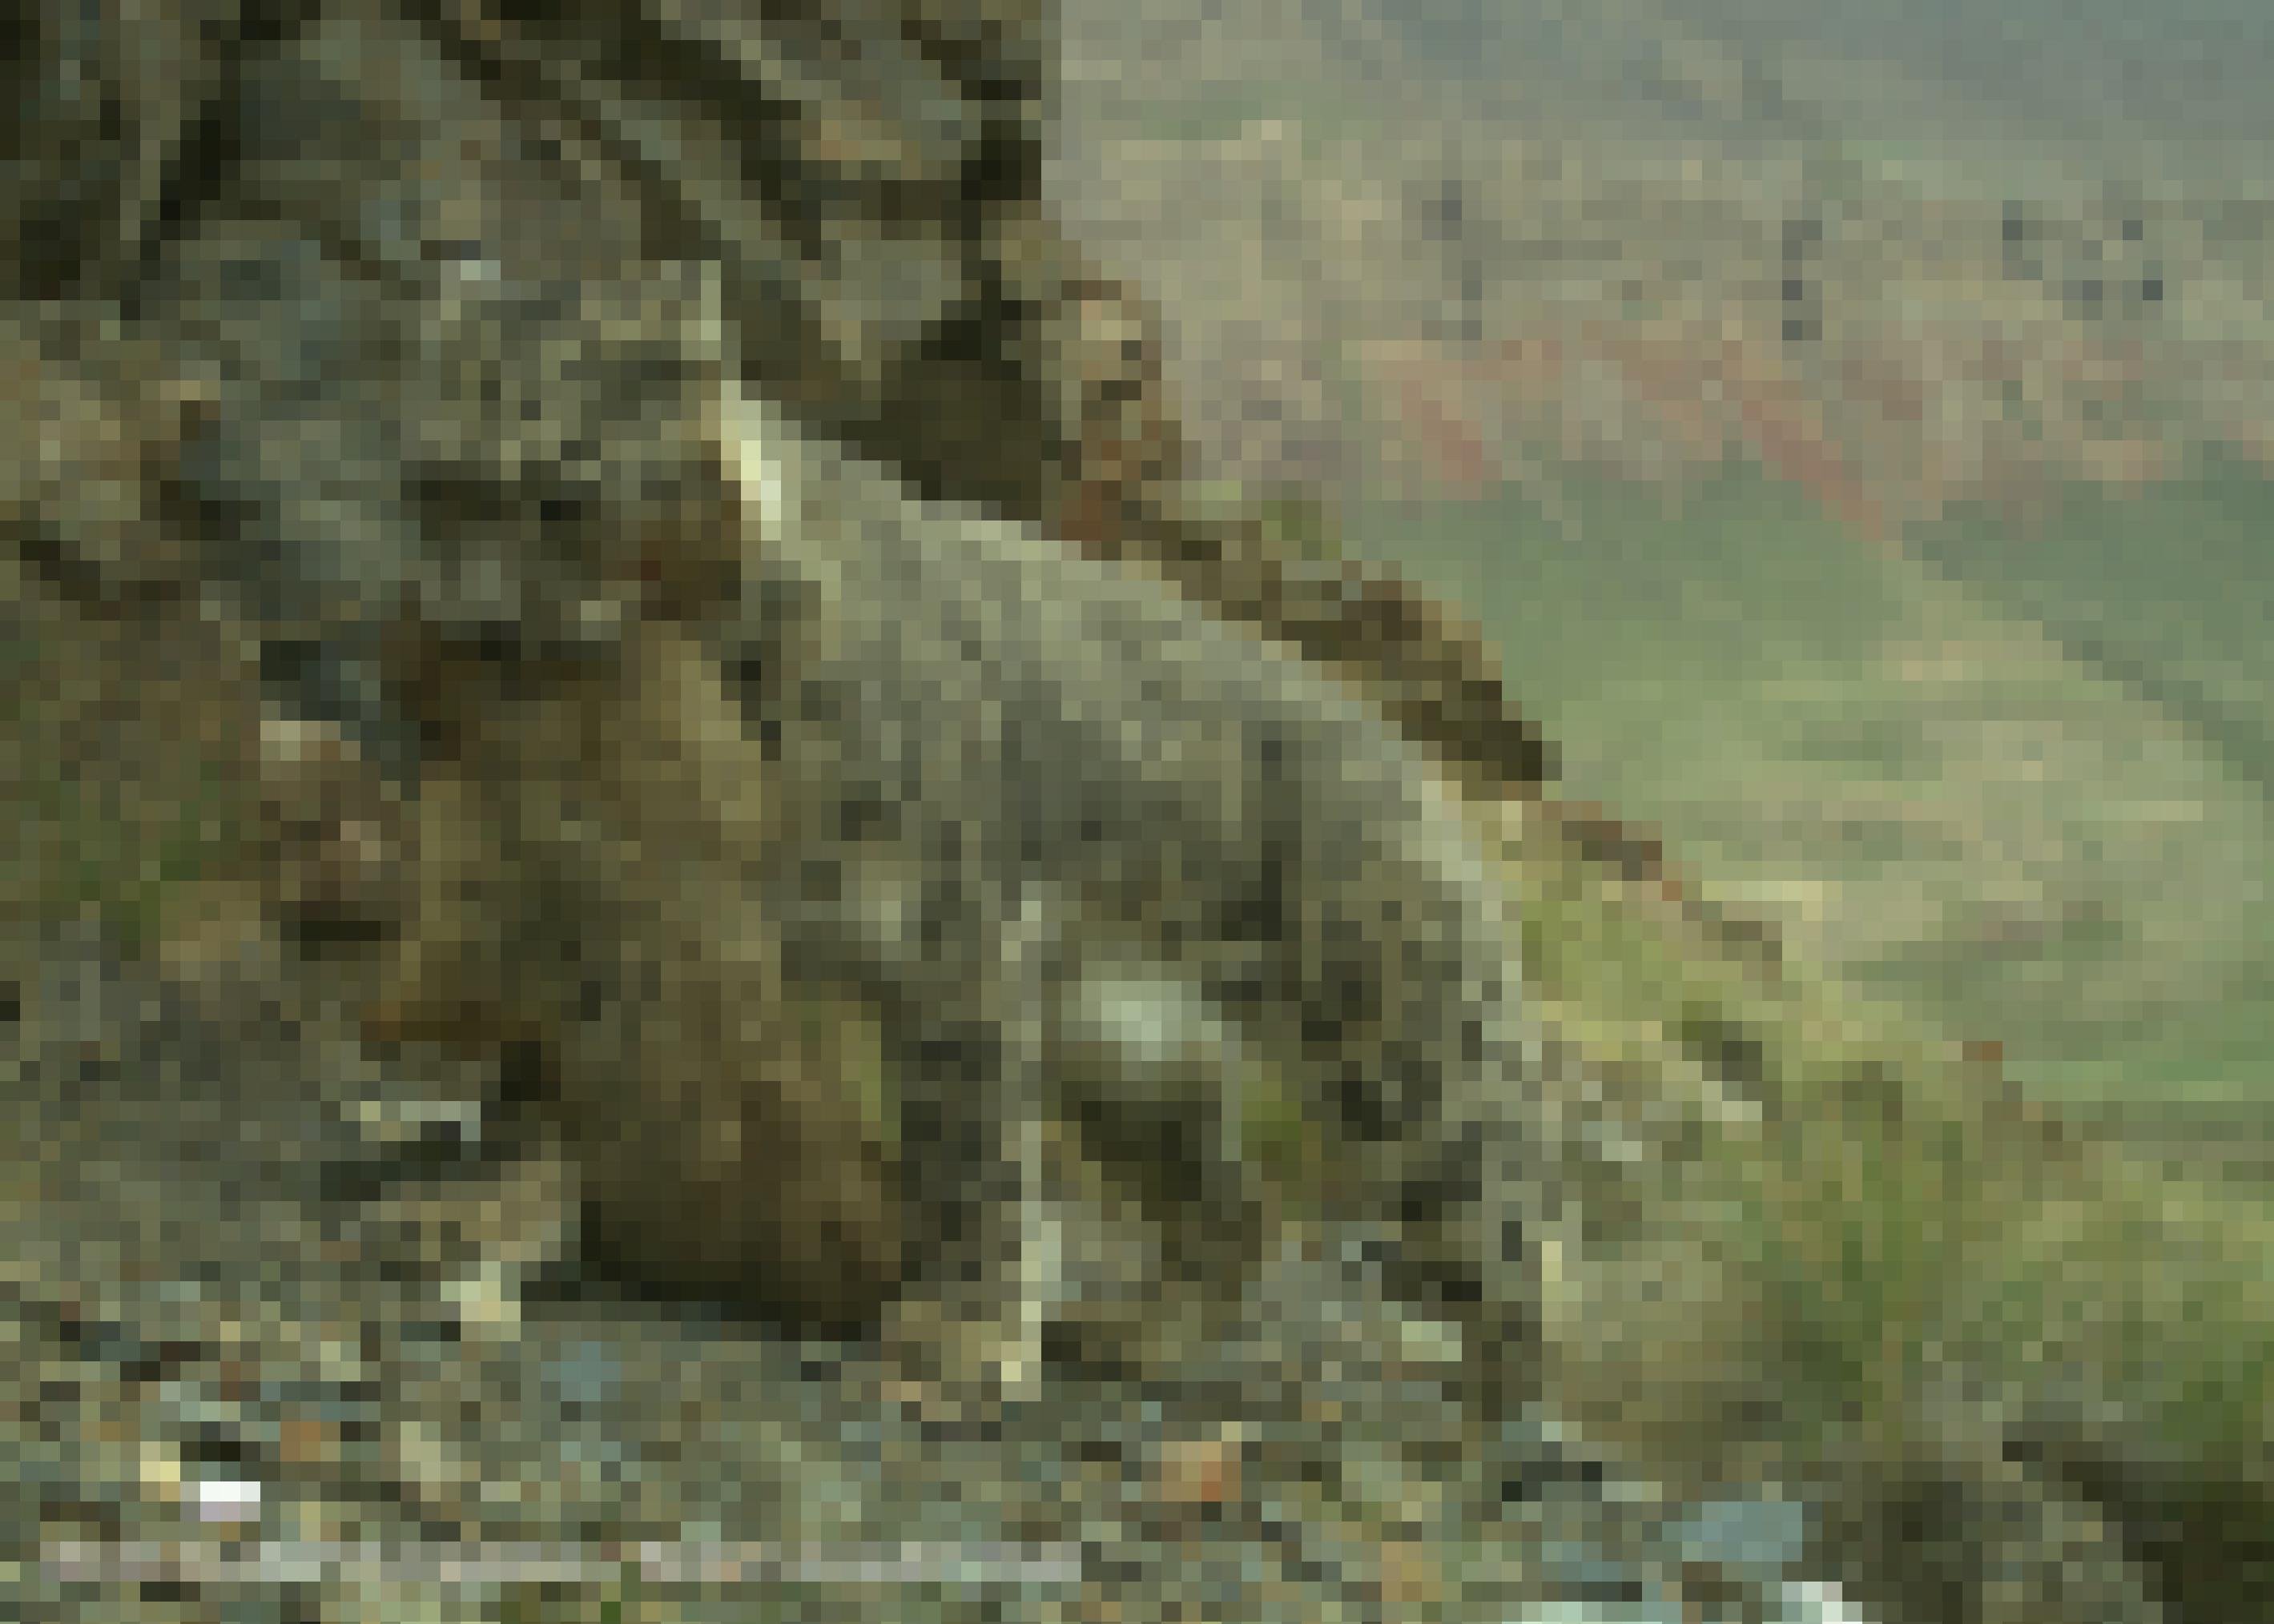 Ein Schneeleopard trägt ein totes Murmeltier im Maul.